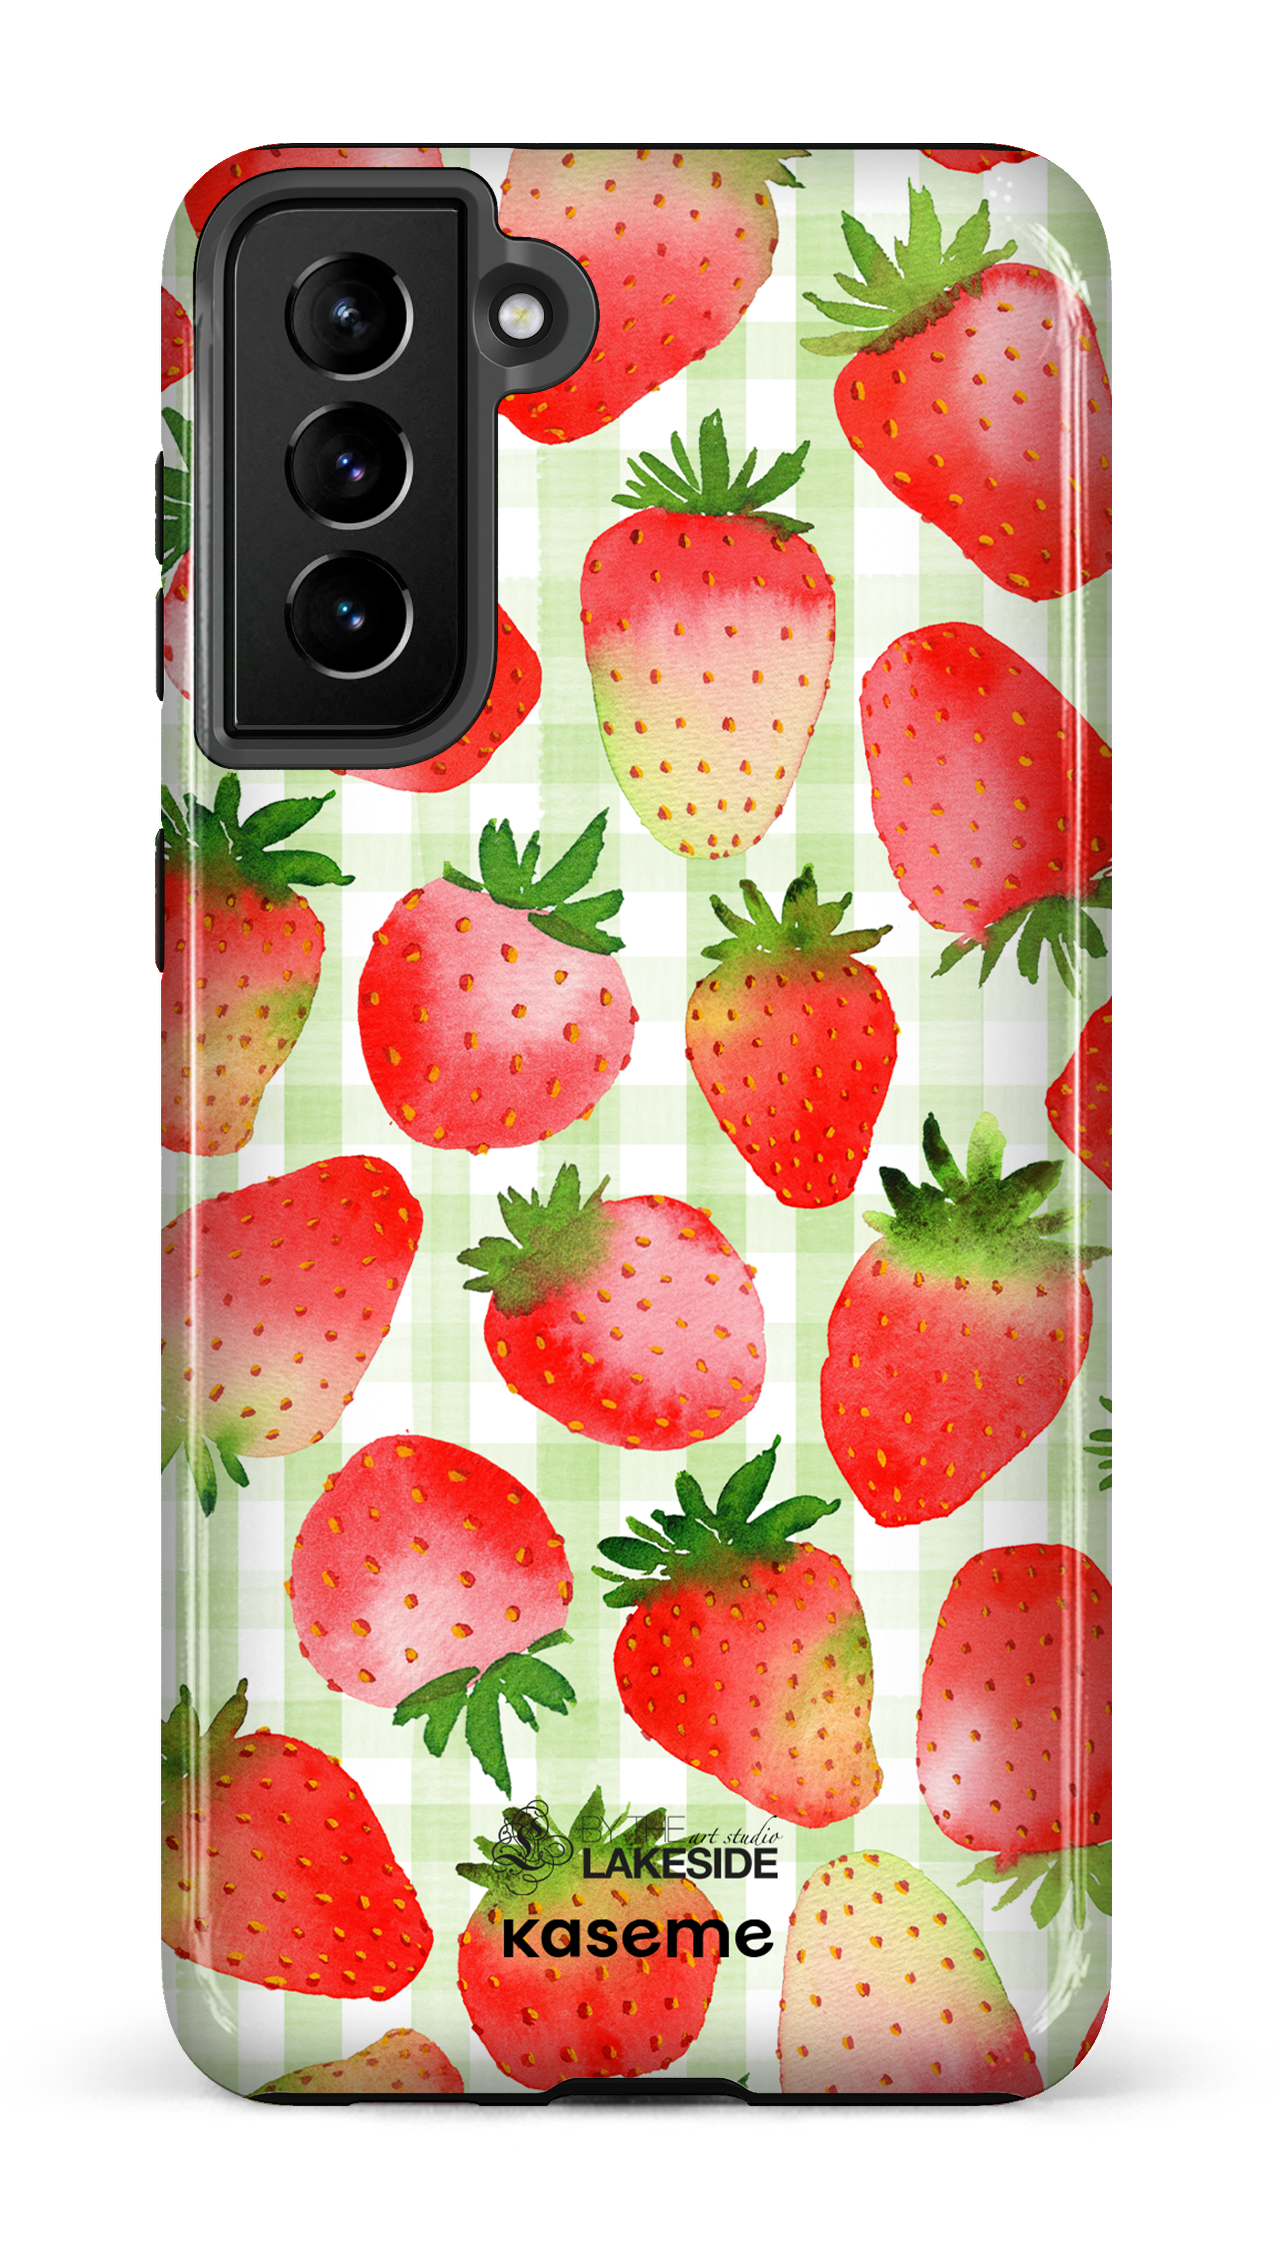 Strawberry Fields Green by Pooja Umrani - Galaxy S21 Plus